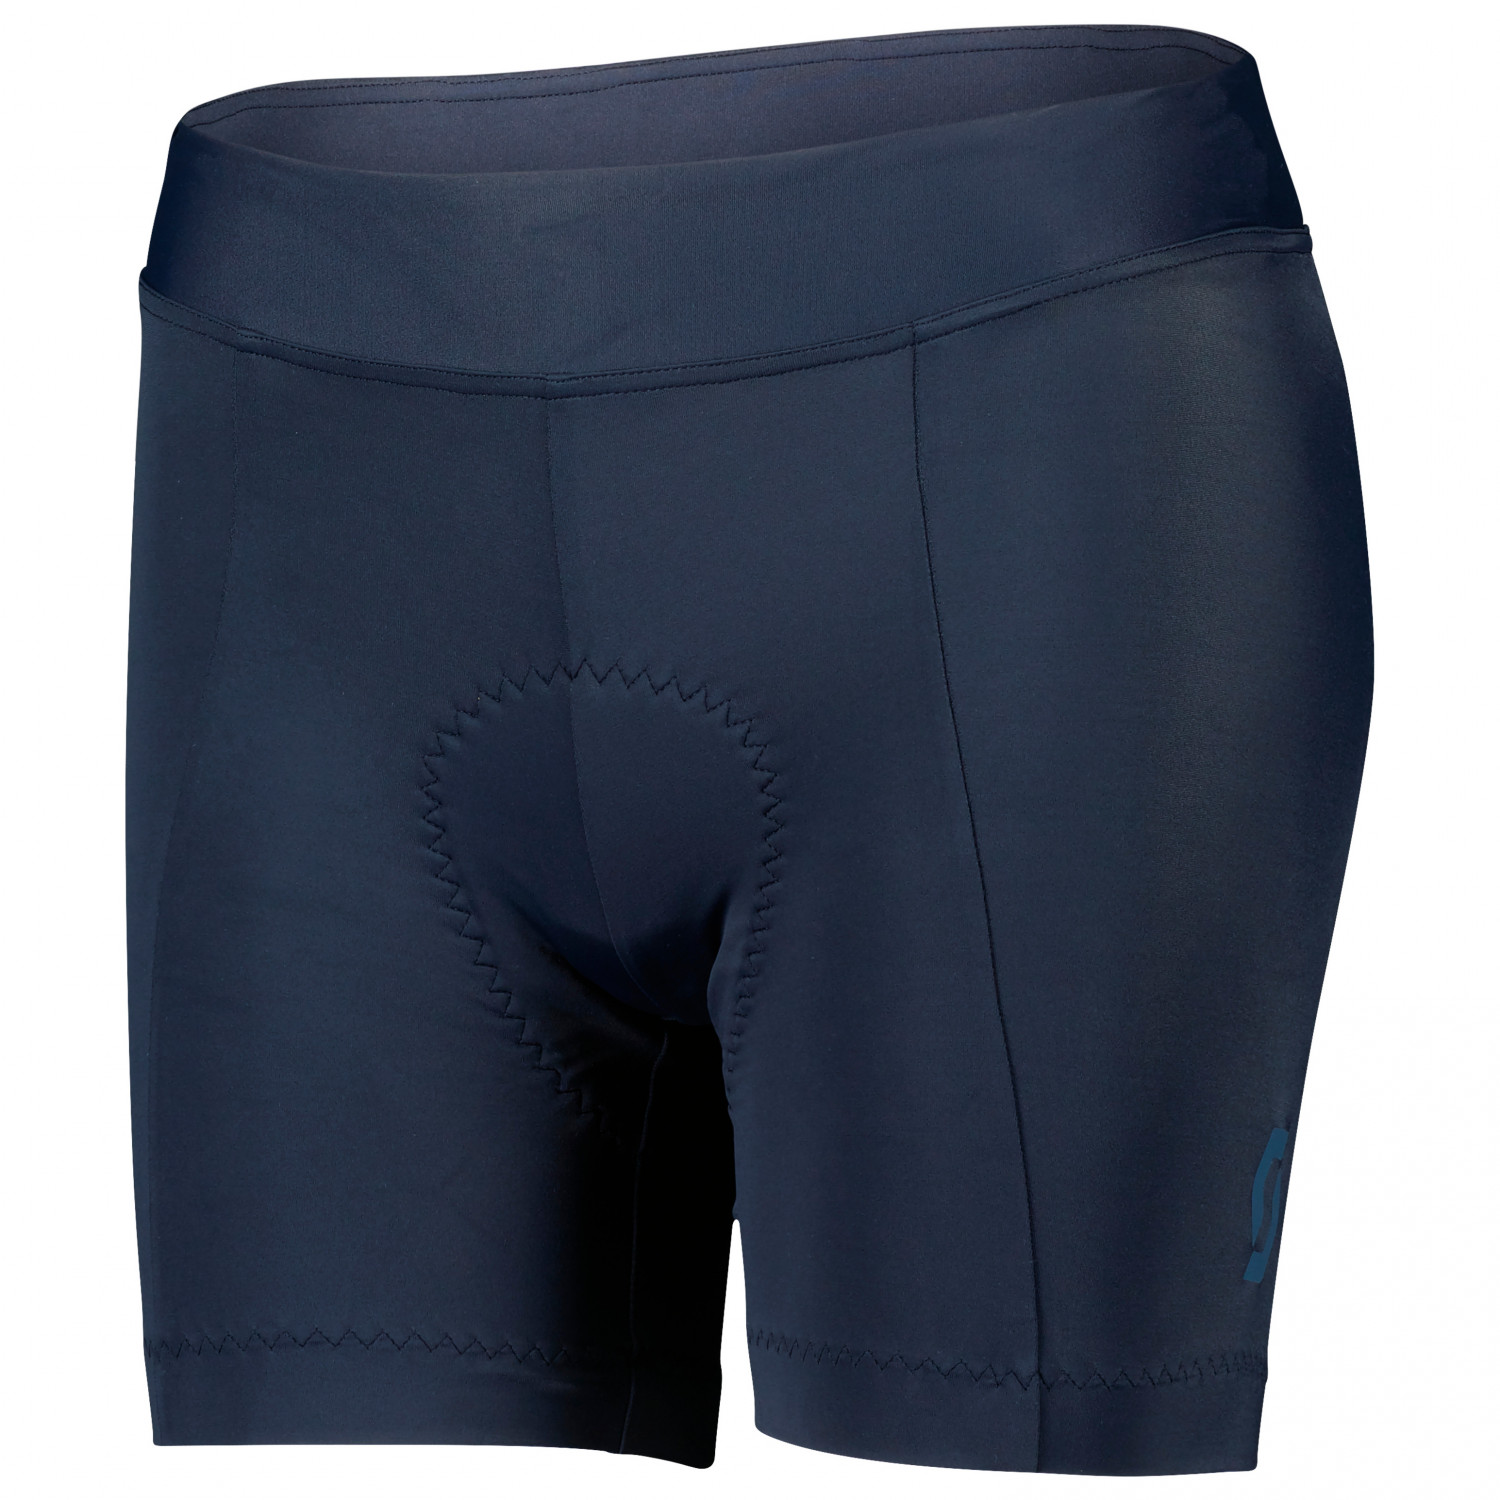 Велосипедные шорты Scott Women's Shorts Endurance 20 ++, цвет Dark Blue/Metal Blue